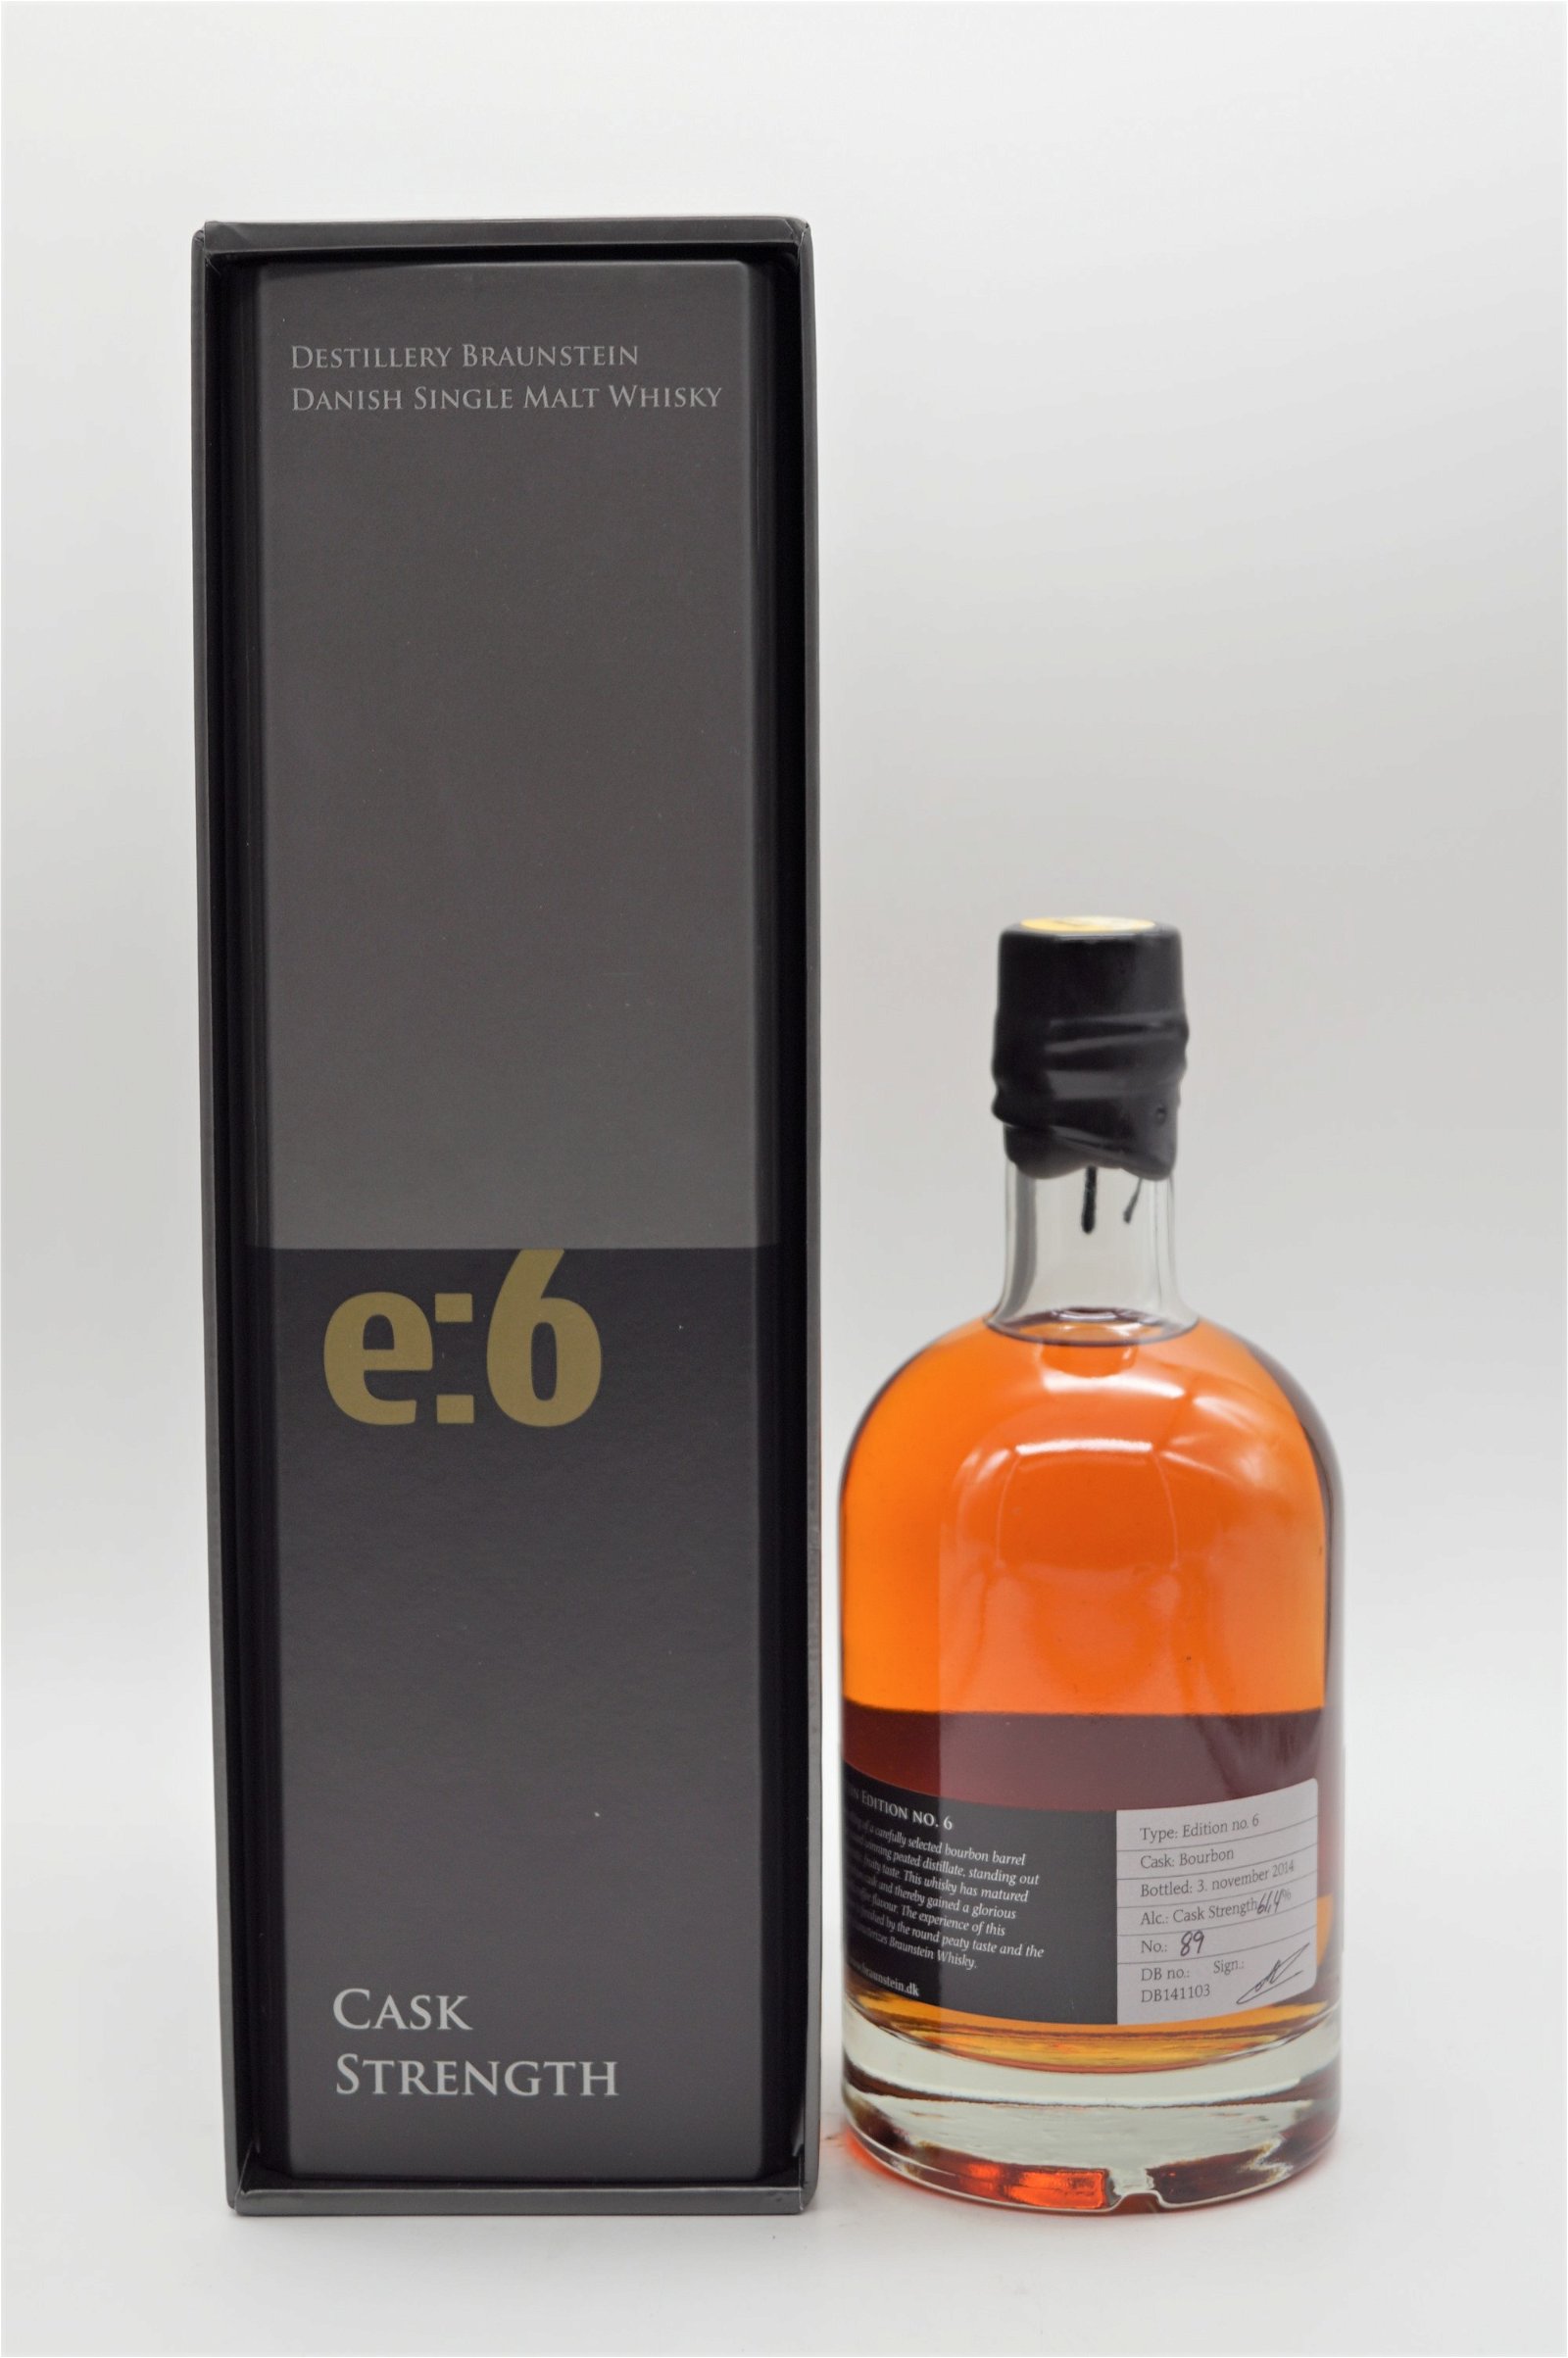 Braunstein Cask Strength Edition E6 Dansk Single Malt Whisky